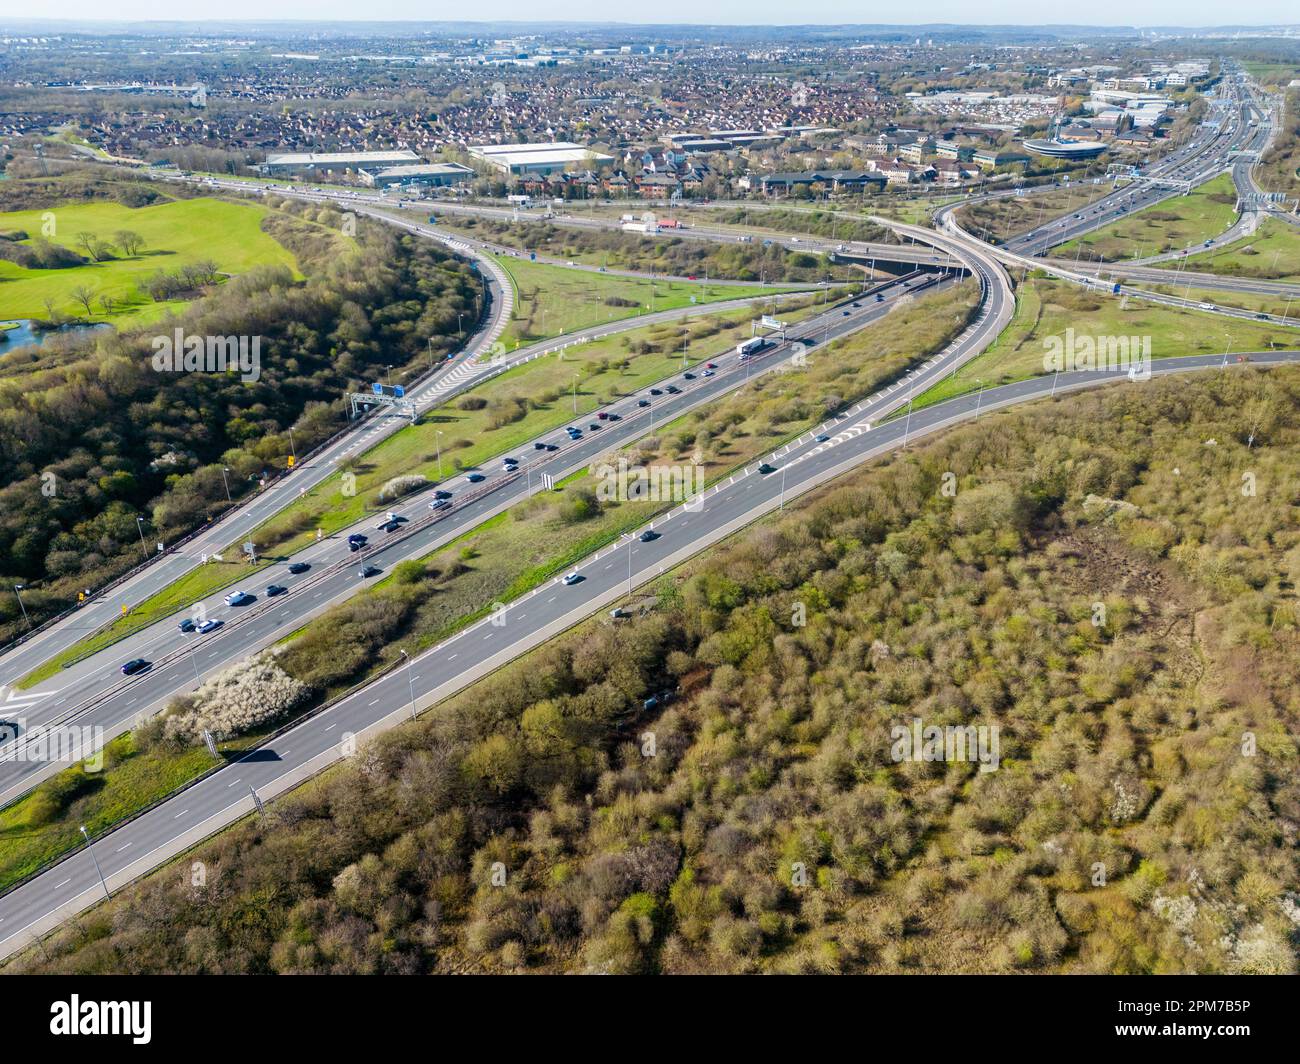 Le trafic des vacances de Pâques a été suivi dans les files d'attente sur la M5 près de la jonction de l'autoroute M4 près de Bristol, au Royaume-Uni. Banque D'Images